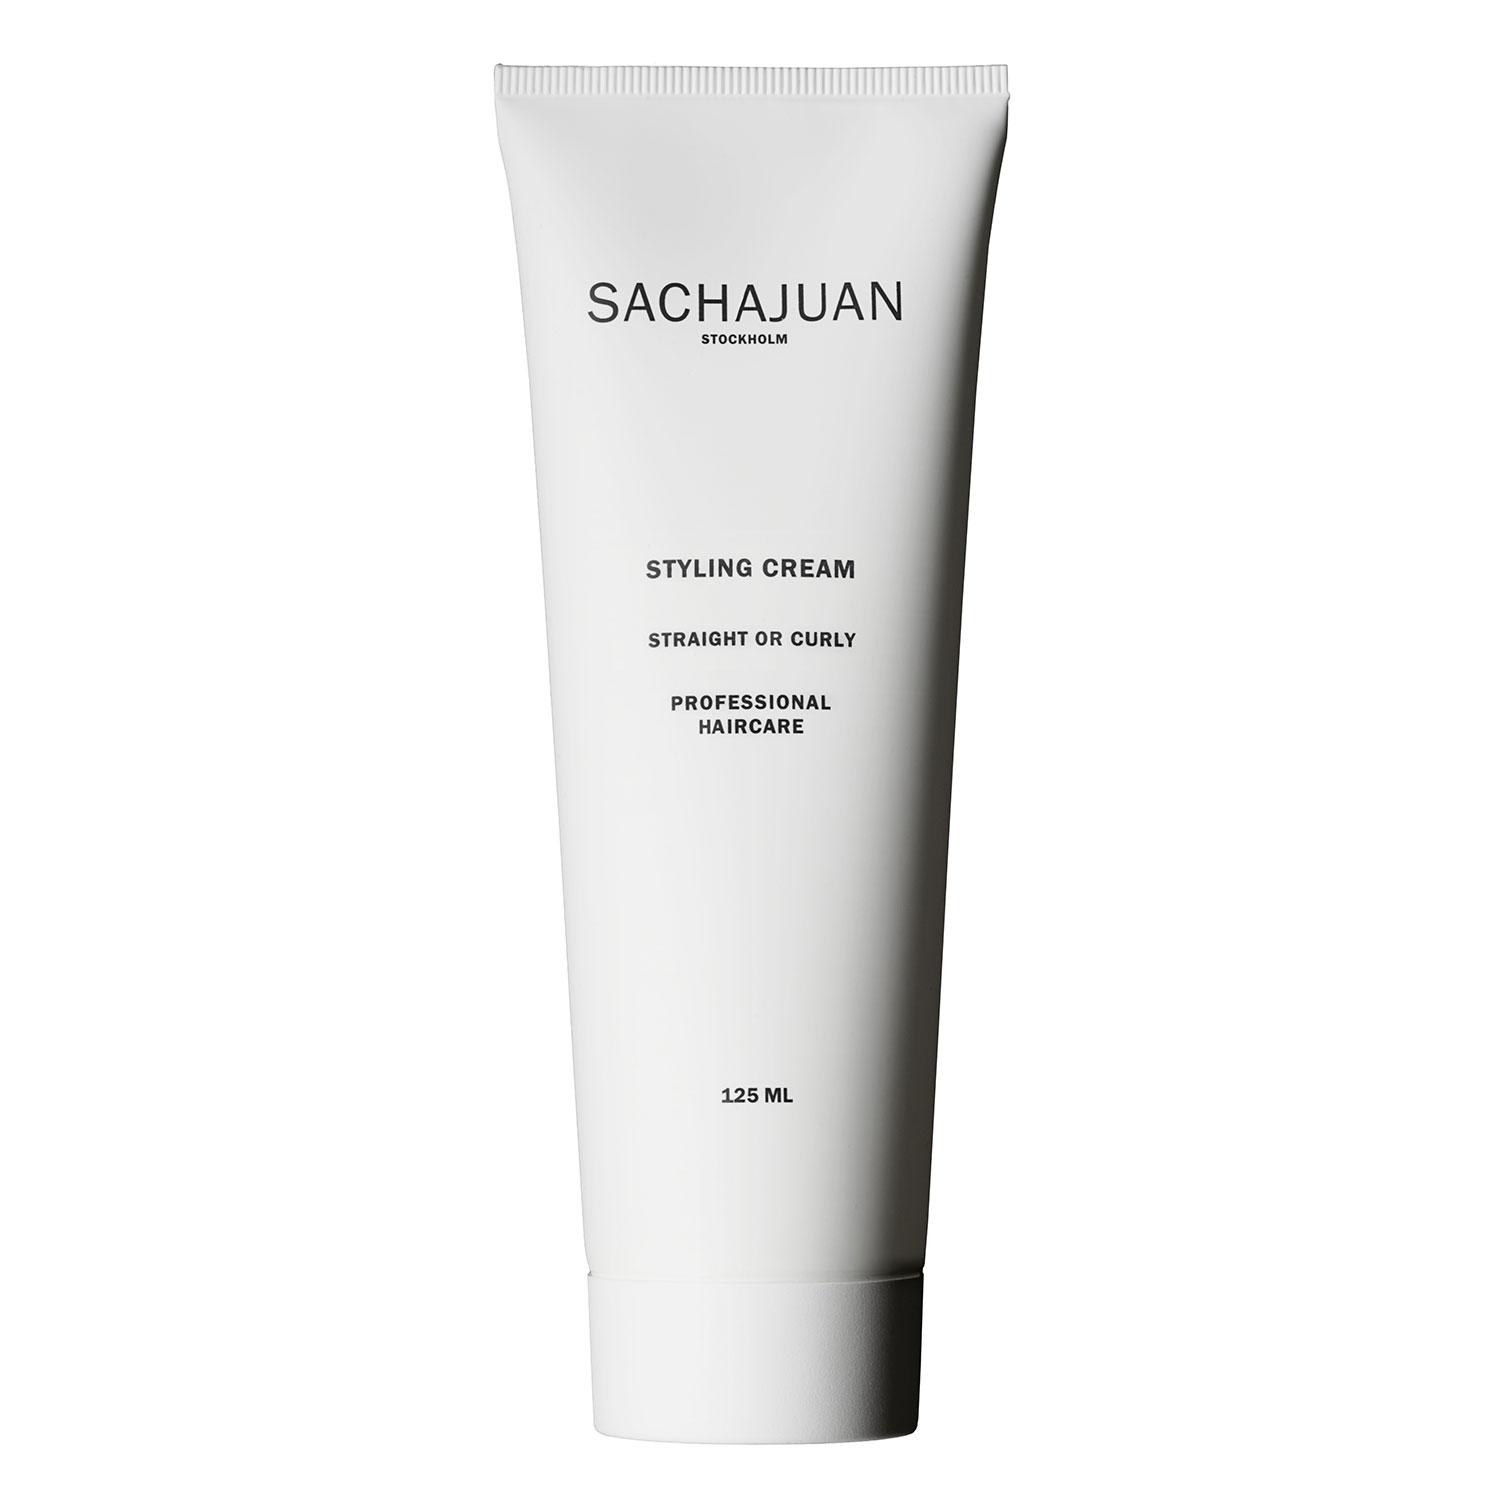 SACHAJUAN - Styling Cream